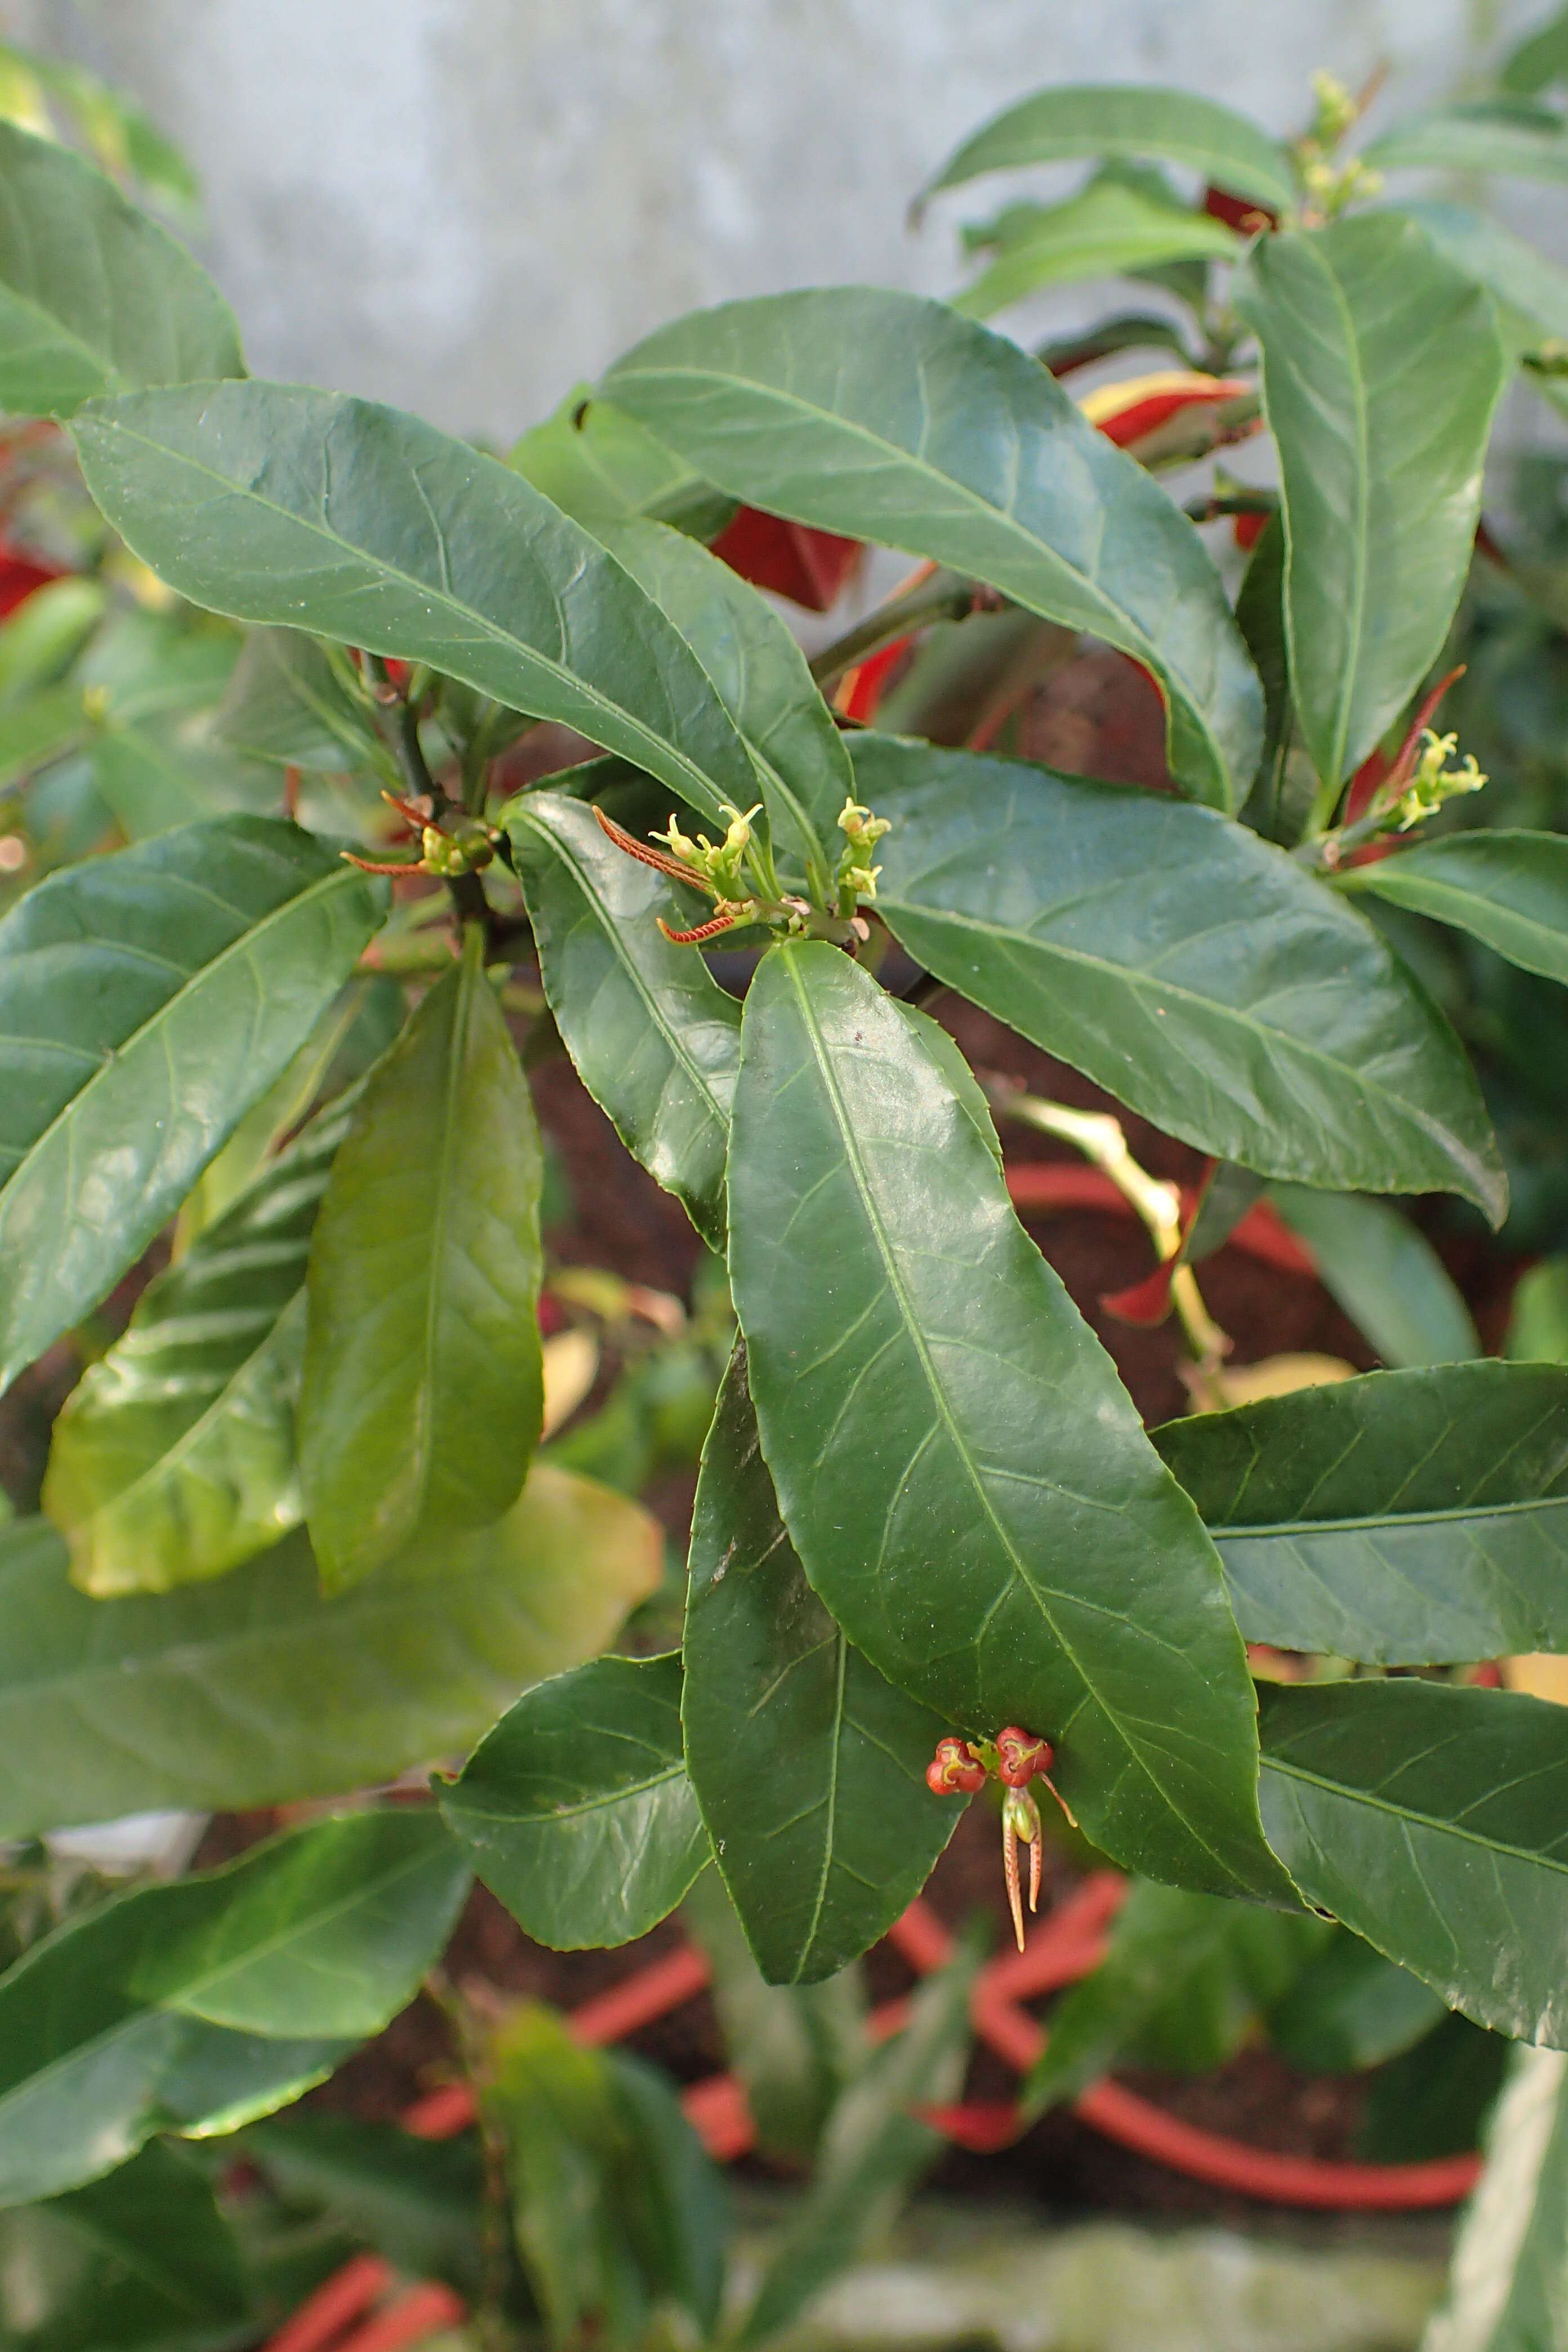 Sivun Excoecaria cochinchinensis Lour. kuva